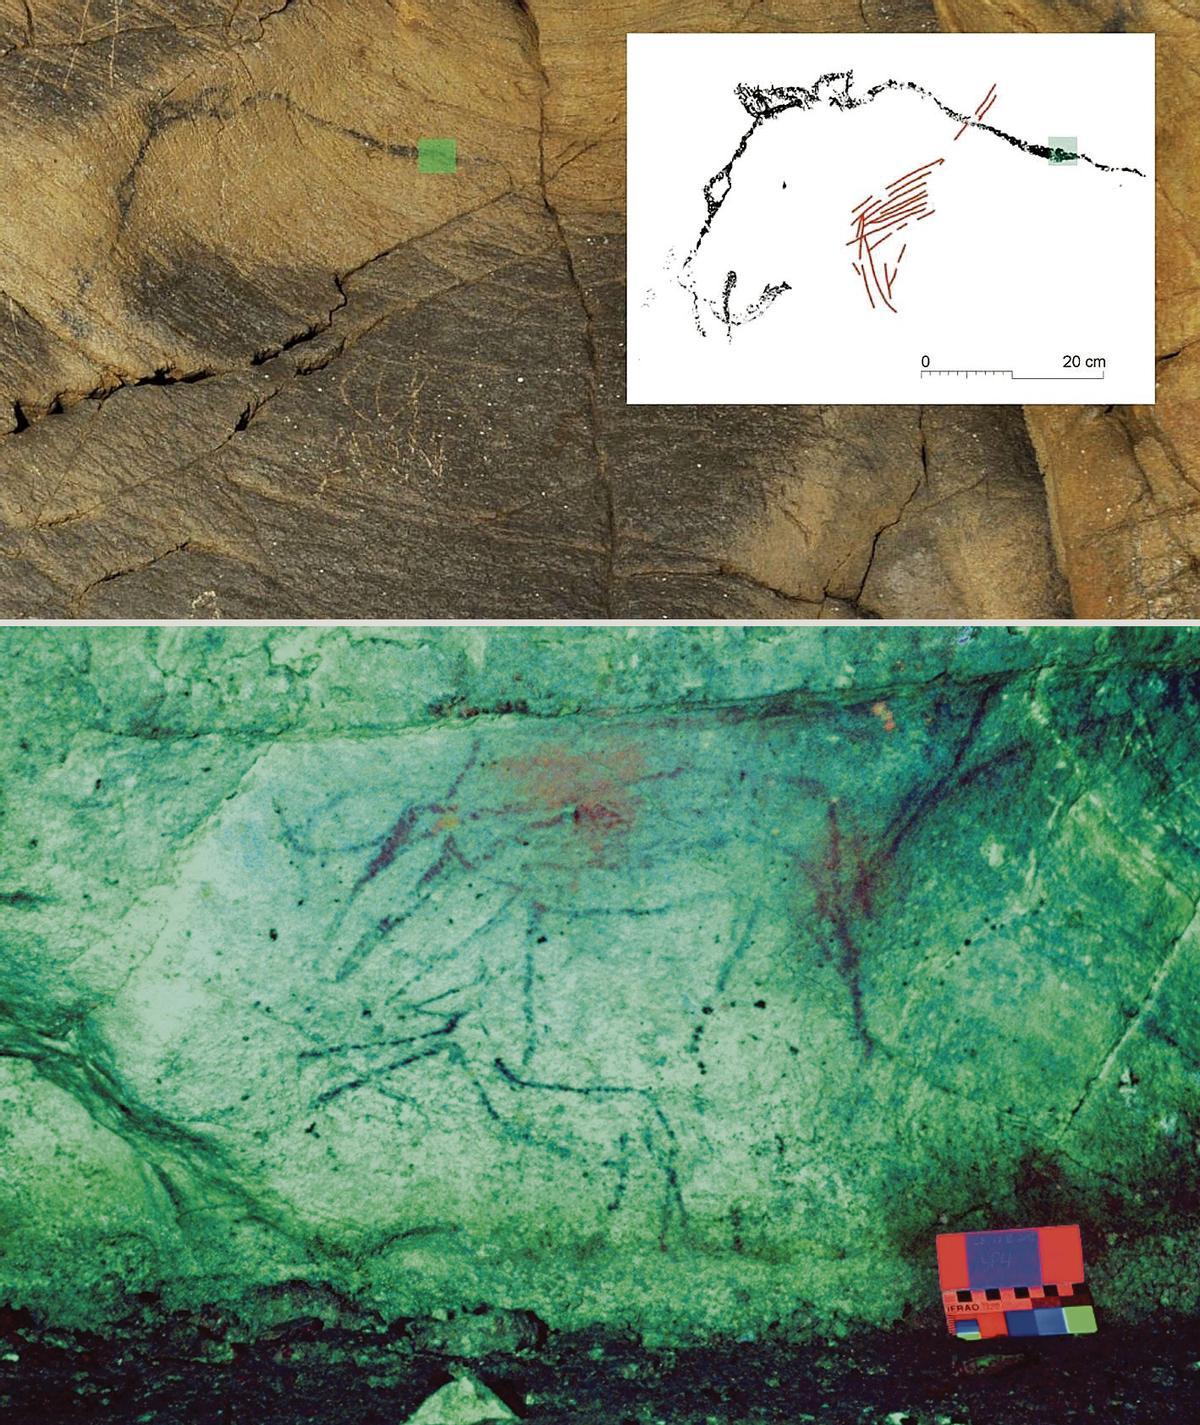 Grabados rupestres localizados en las campañas realizadas en 2011 y 2012 y datados con una antigüedad de unos 10.000 años